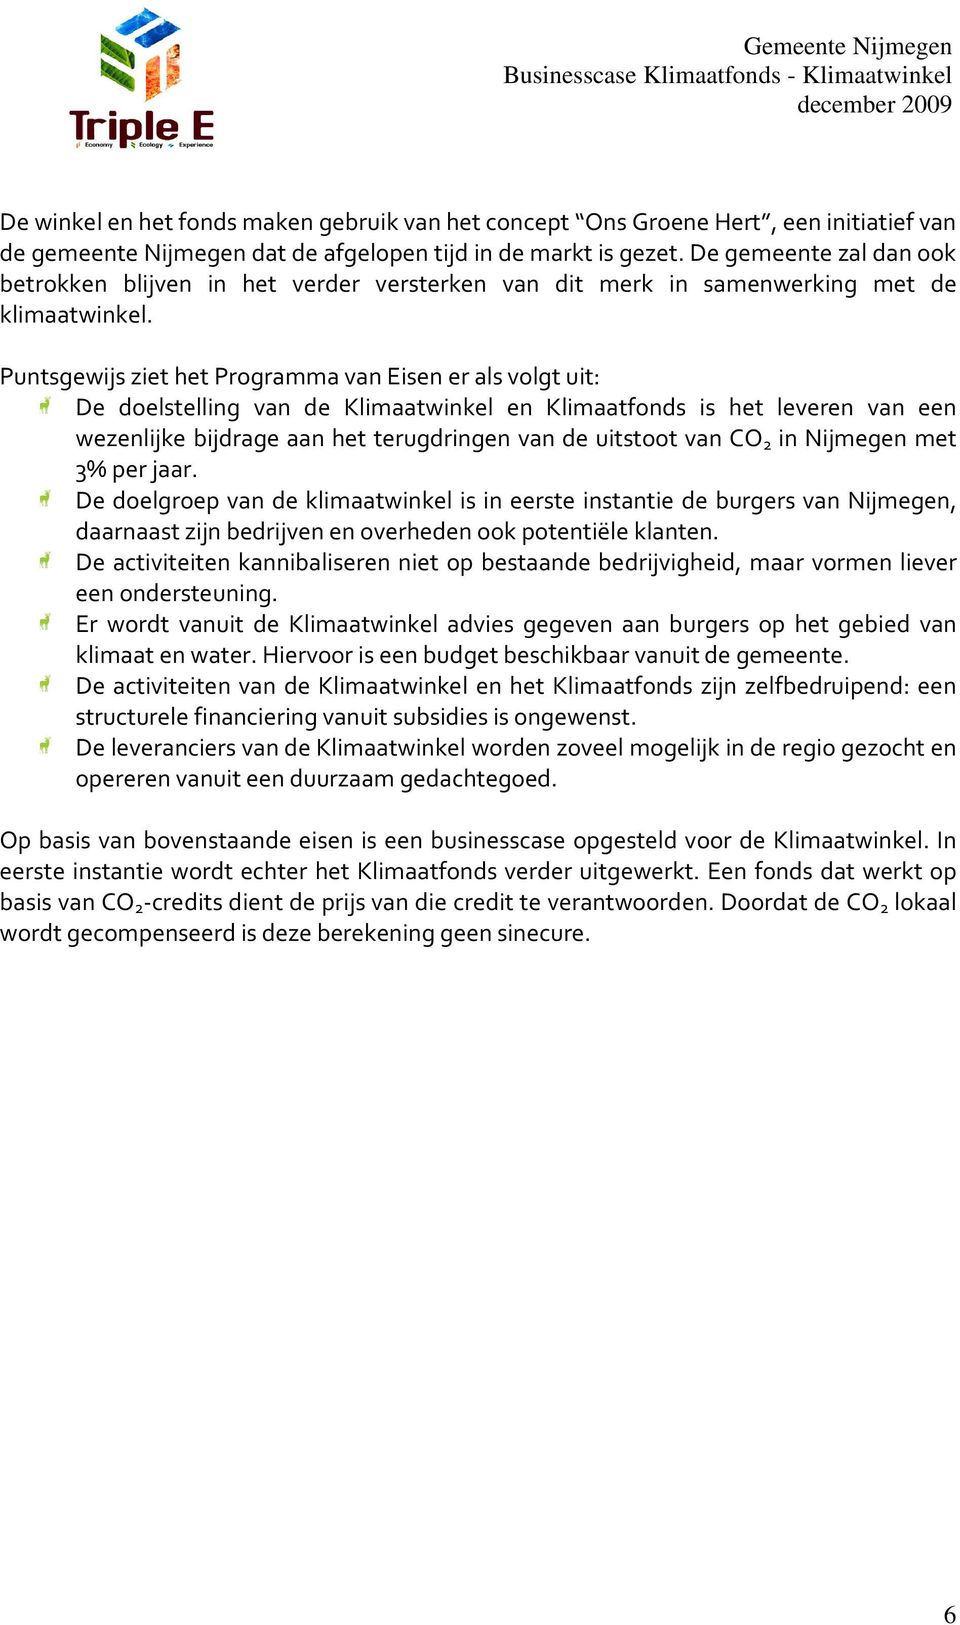 Puntsgewijs ziet het Programma van Eisen er als volgt uit: De doelstelling van de Klimaatwinkel en Klimaatfonds is het leveren van een wezenlijke bijdrage aan het terugdringen van de uitstoot van CO